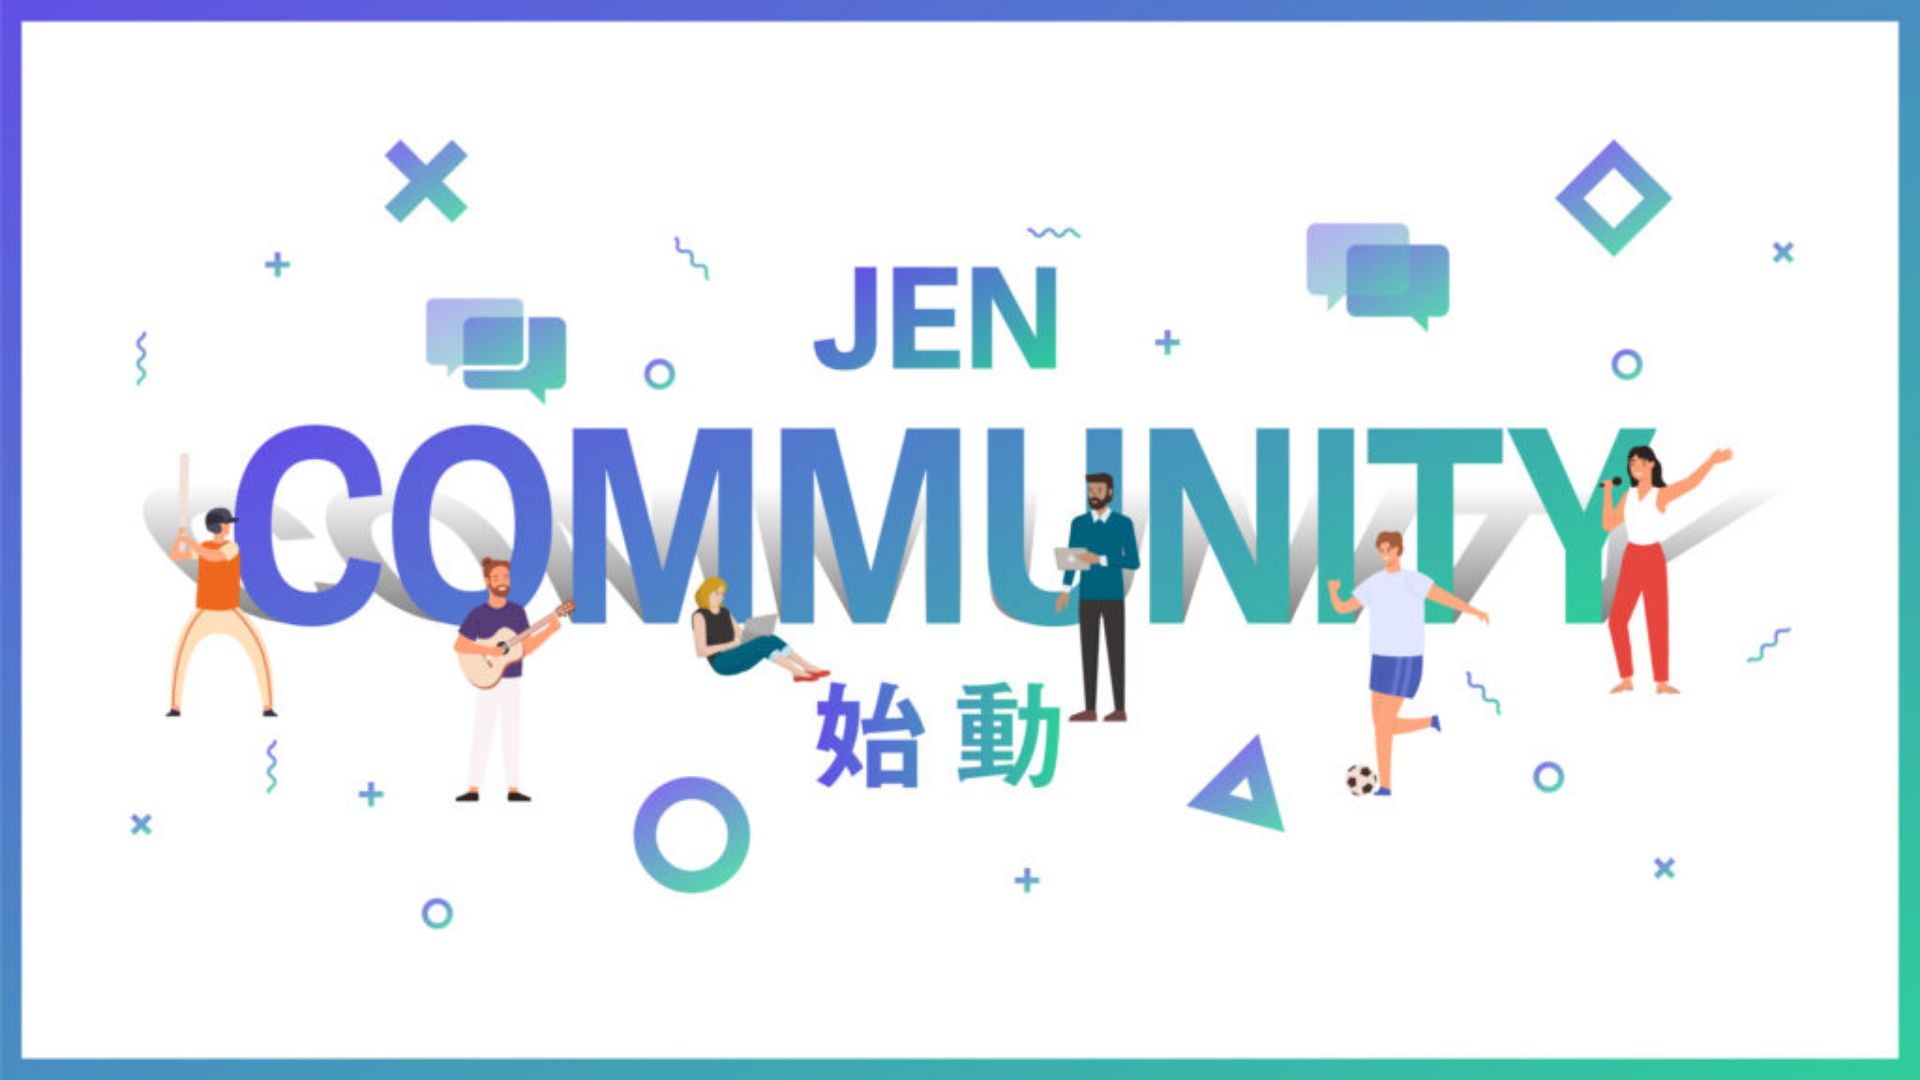 FIREBUGが運営するエンタメビジネストレンドメディア「JEN」、 次世代のエンタメビジネスを創る紹介制オンラインコミュニティを始動